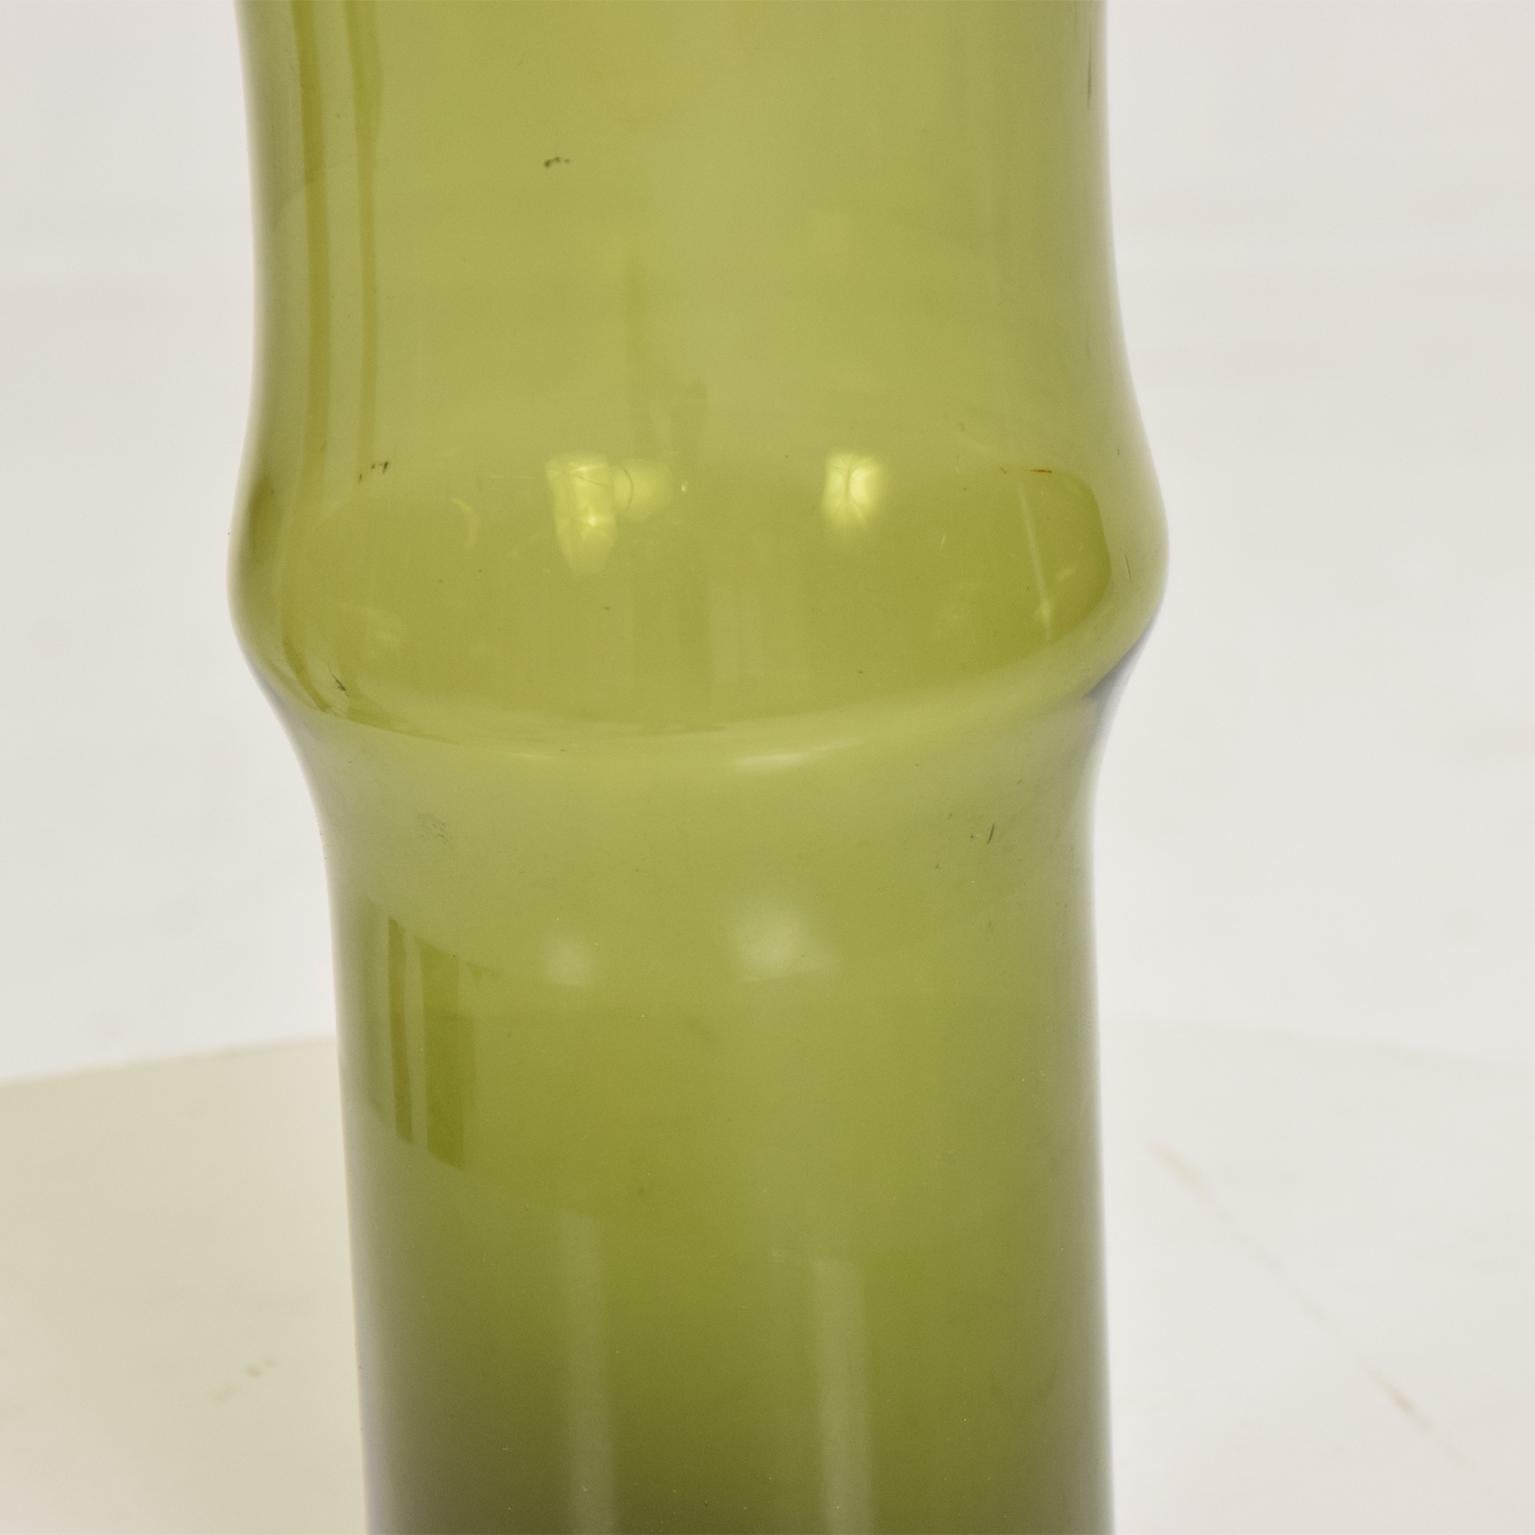 Mid-20th Century Green Glass Pitcher Vase by Tapio Wirkkala for Iittala Midcentury Danish Modern